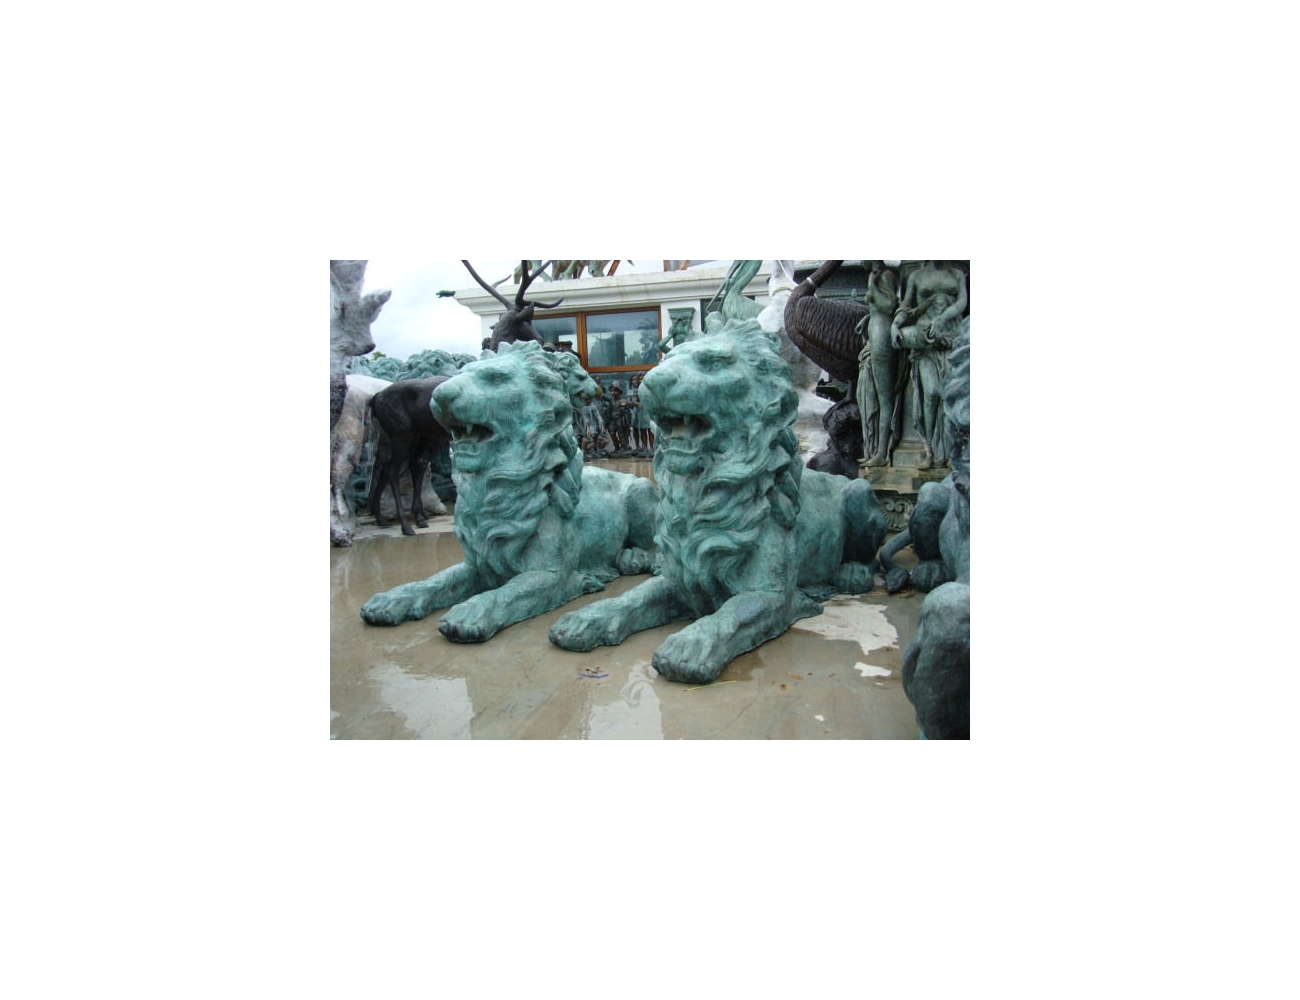 Escultura de leones de bronce | Esculturas para decoracion de jardines